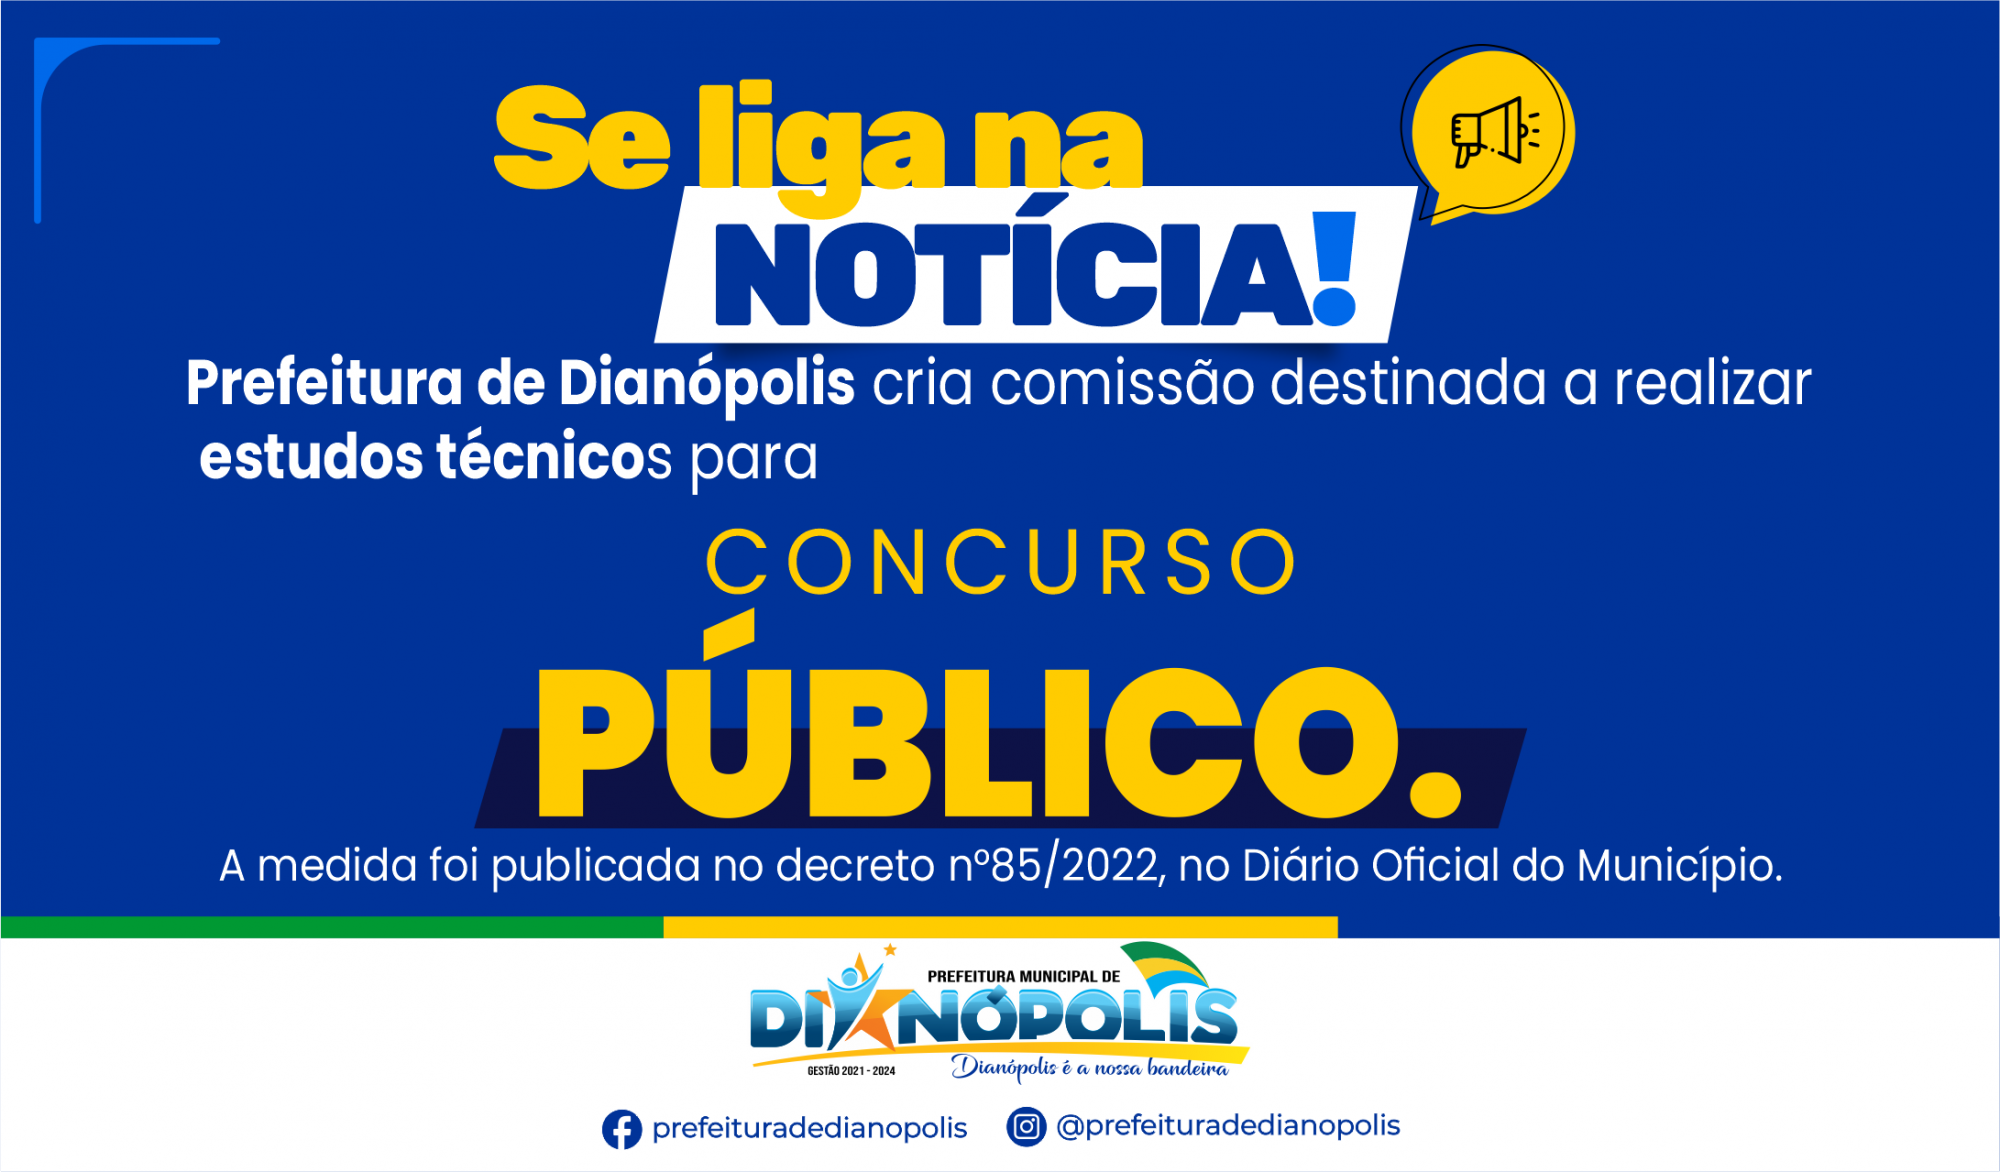 Prefeitura de Dianópolis cria comissão para realizar estudos técnicos para concurso público